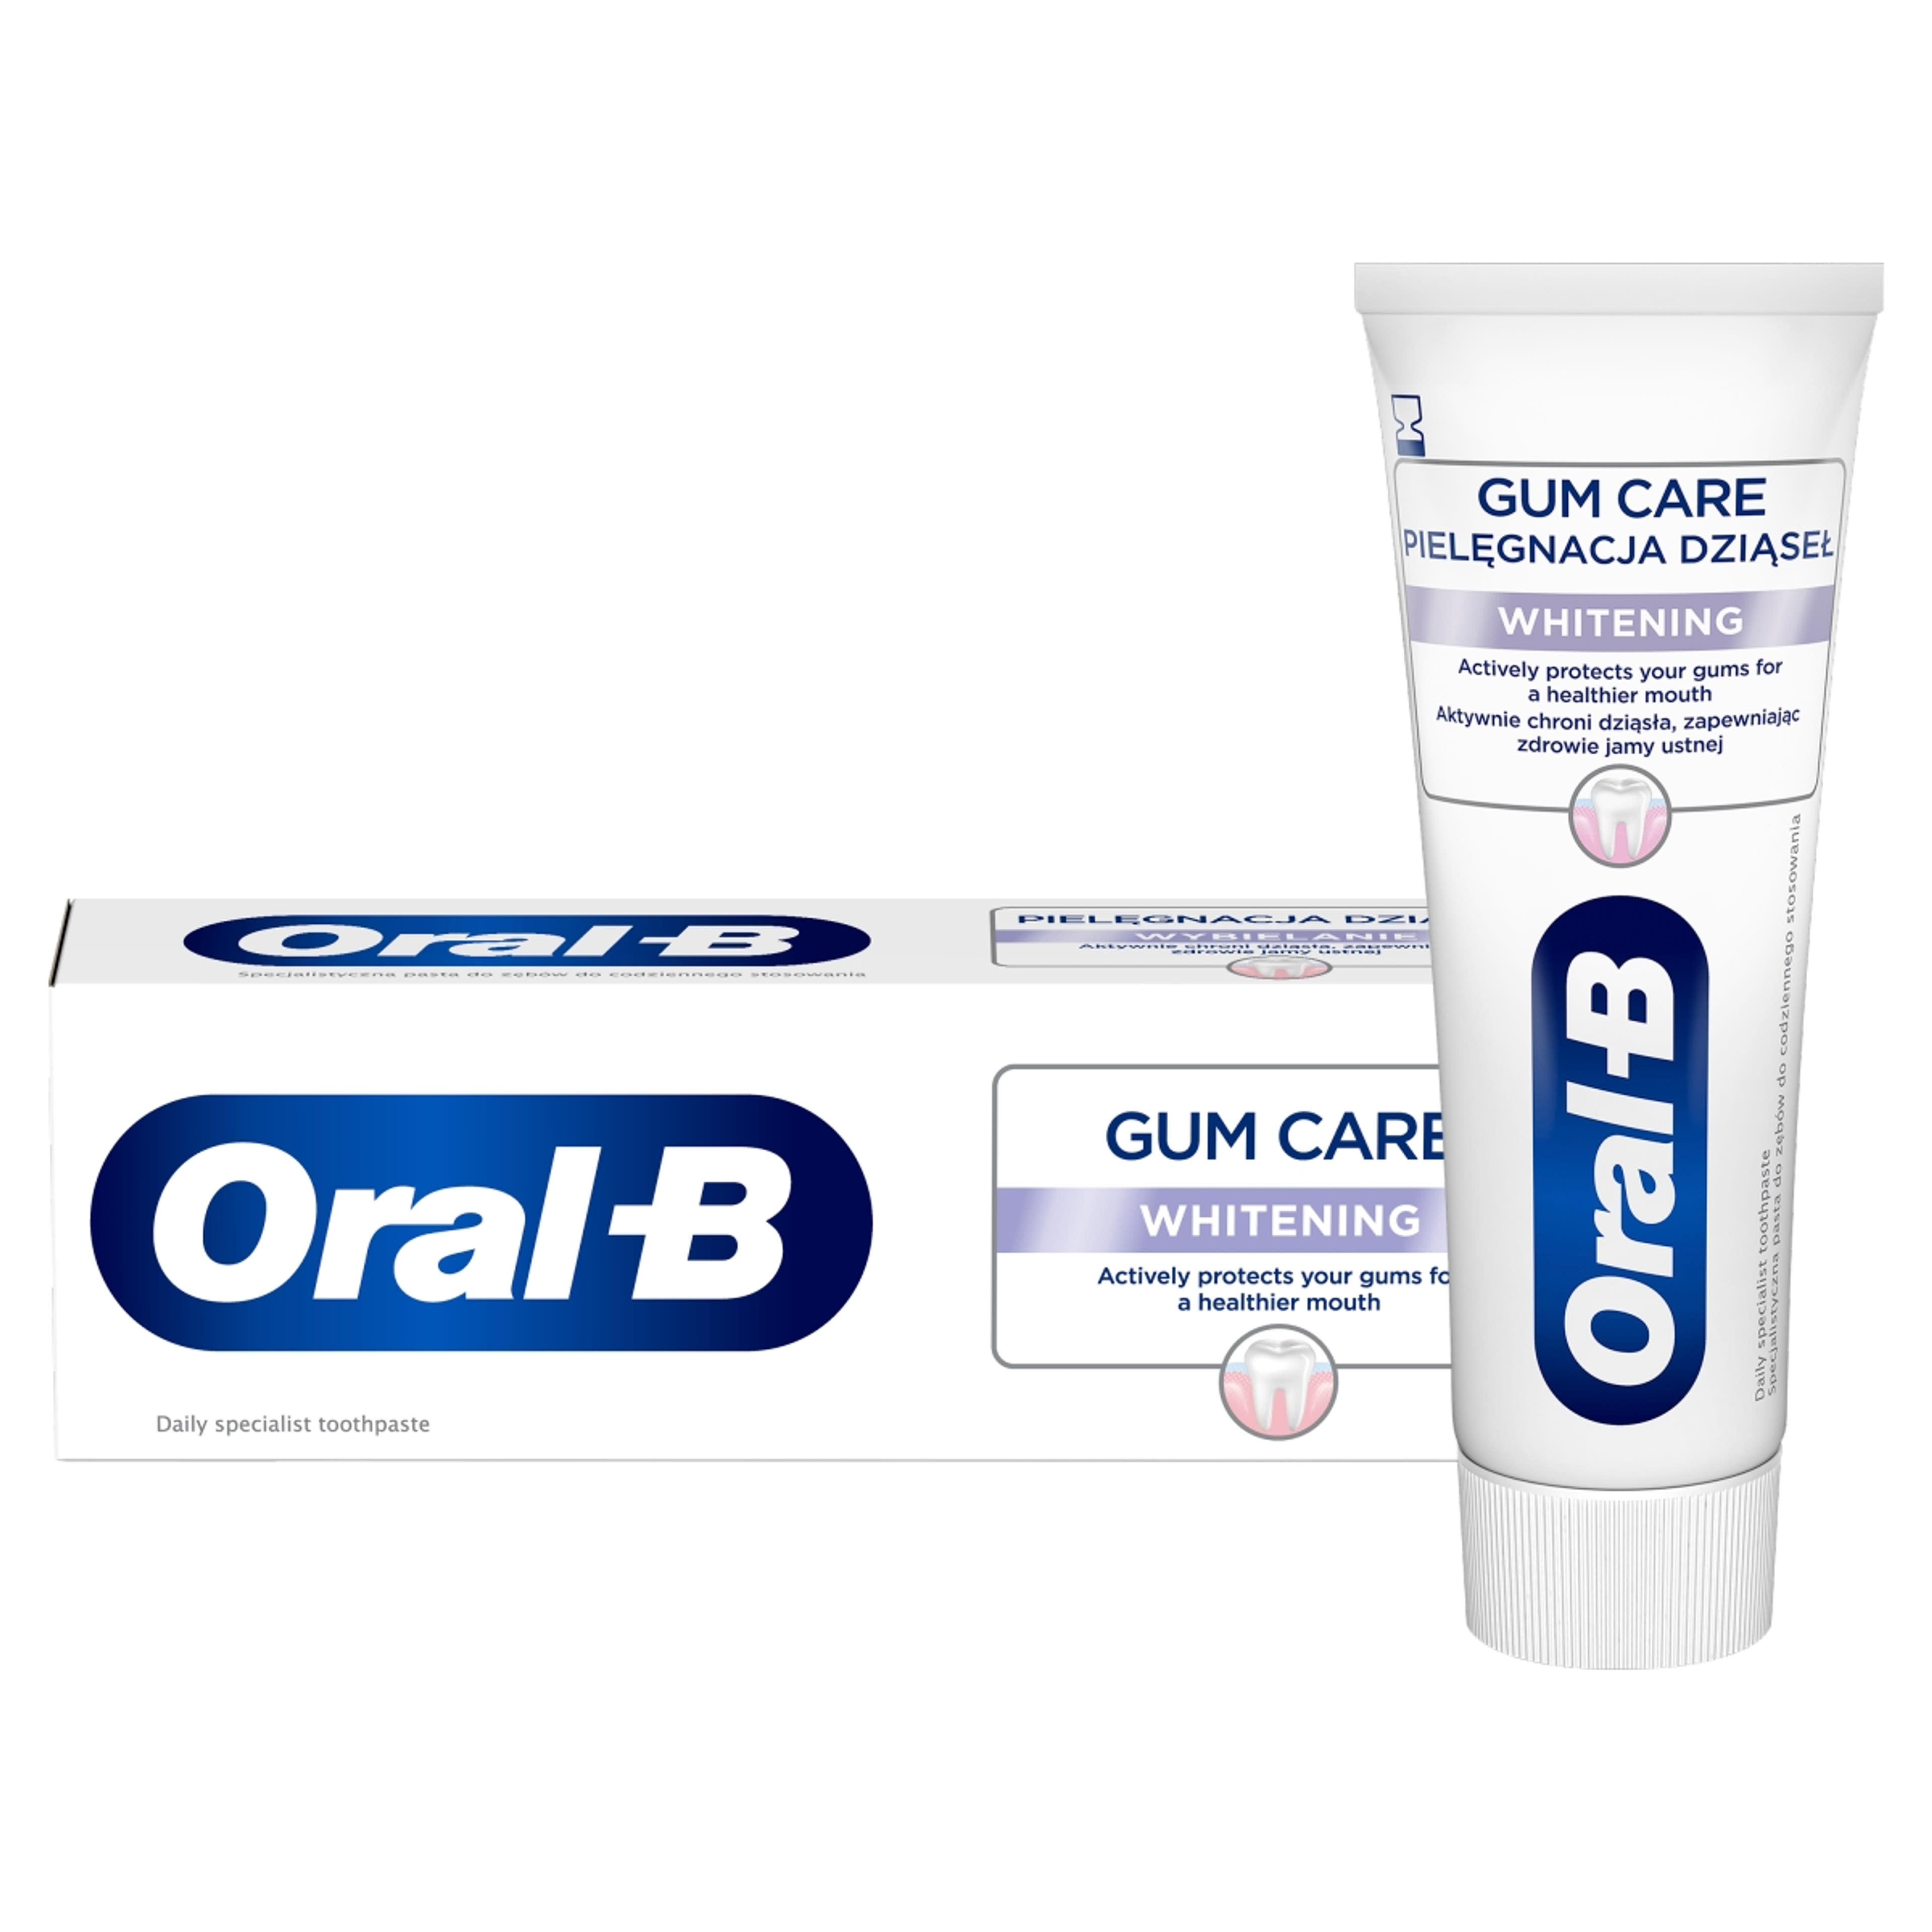 Oral-B Gum Care Whitening fogkrém - 65 ml-2